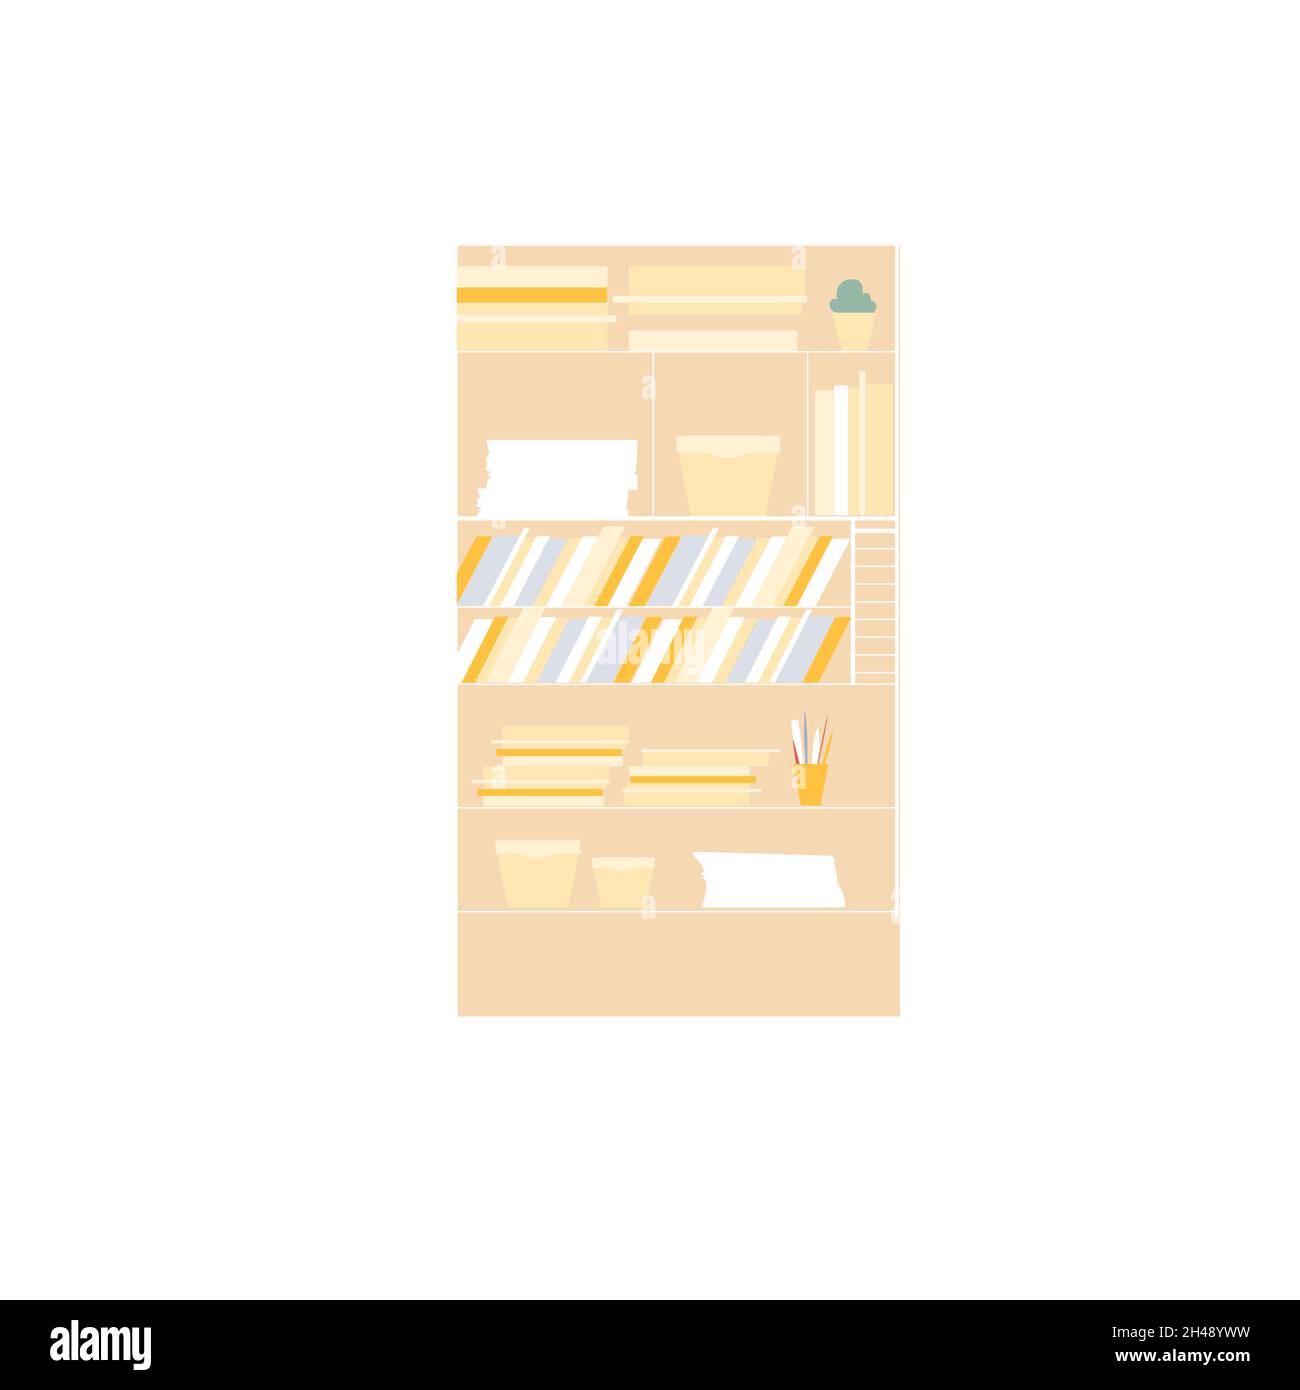 Armoire de travail de dessin animé plate avec dossiers, documents de papier, mobilier de bureau et éléments intérieurs concept d'illustration vectorielle Illustration de Vecteur